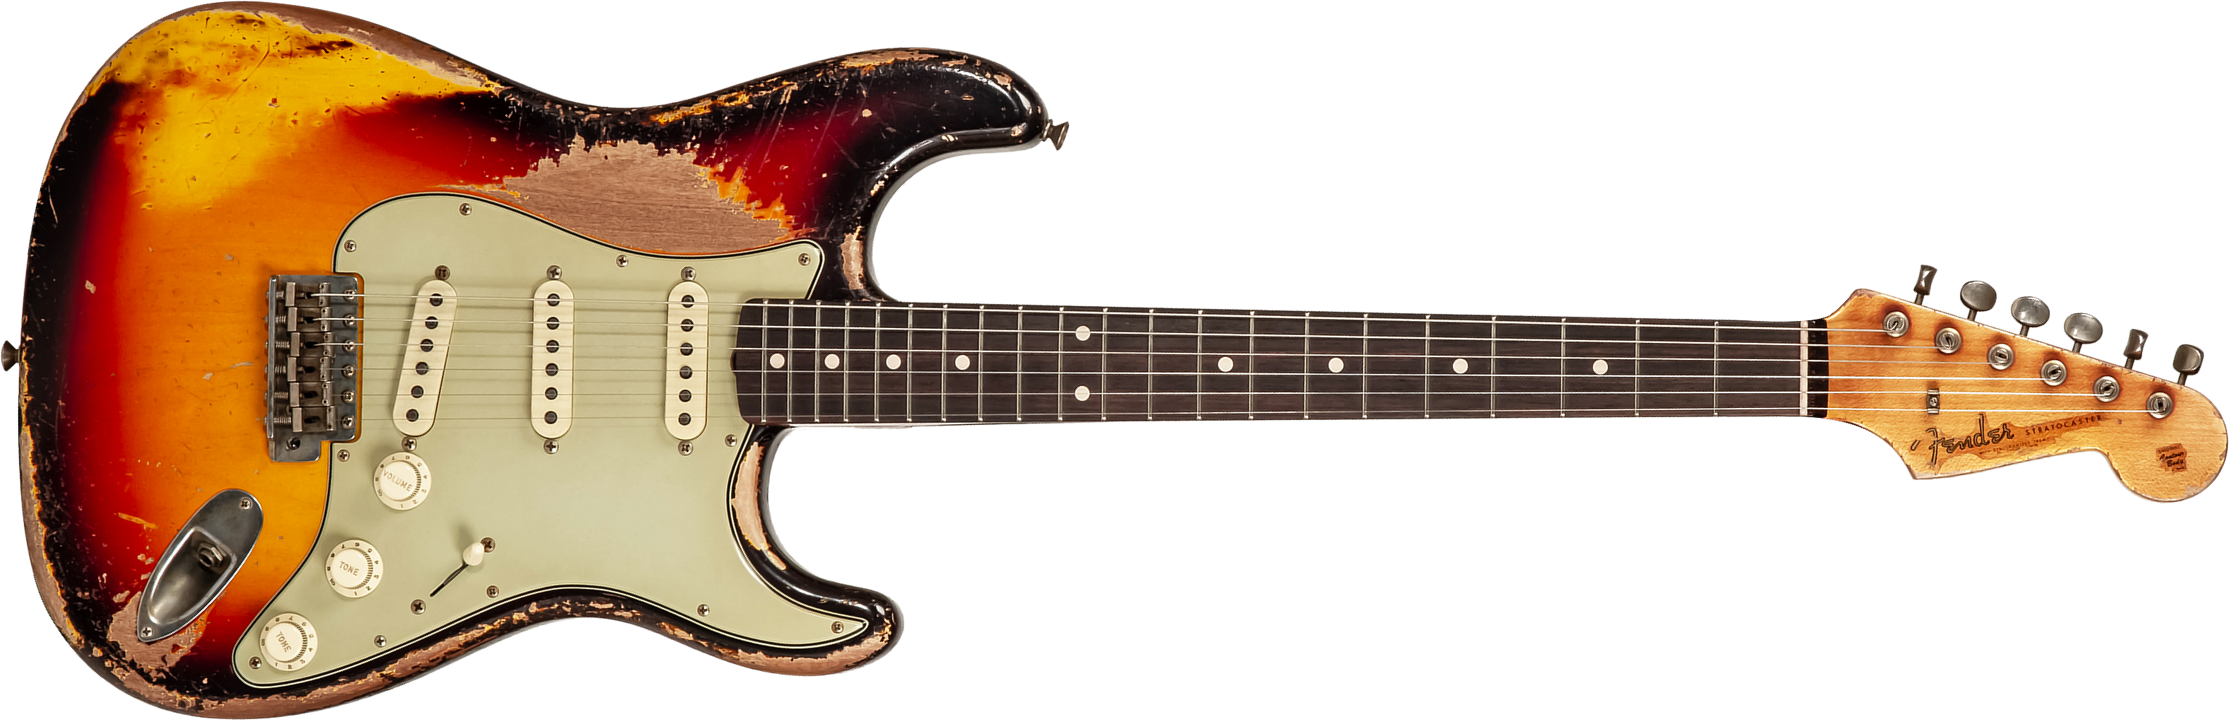 Fender Custom Shop Strat 1961 Masterbuilt K.mcmillin 3s Trem Rw #r127893 - Ultimate Relic 3-color Sunburst - Guitare Électrique Forme Str - Main pictu